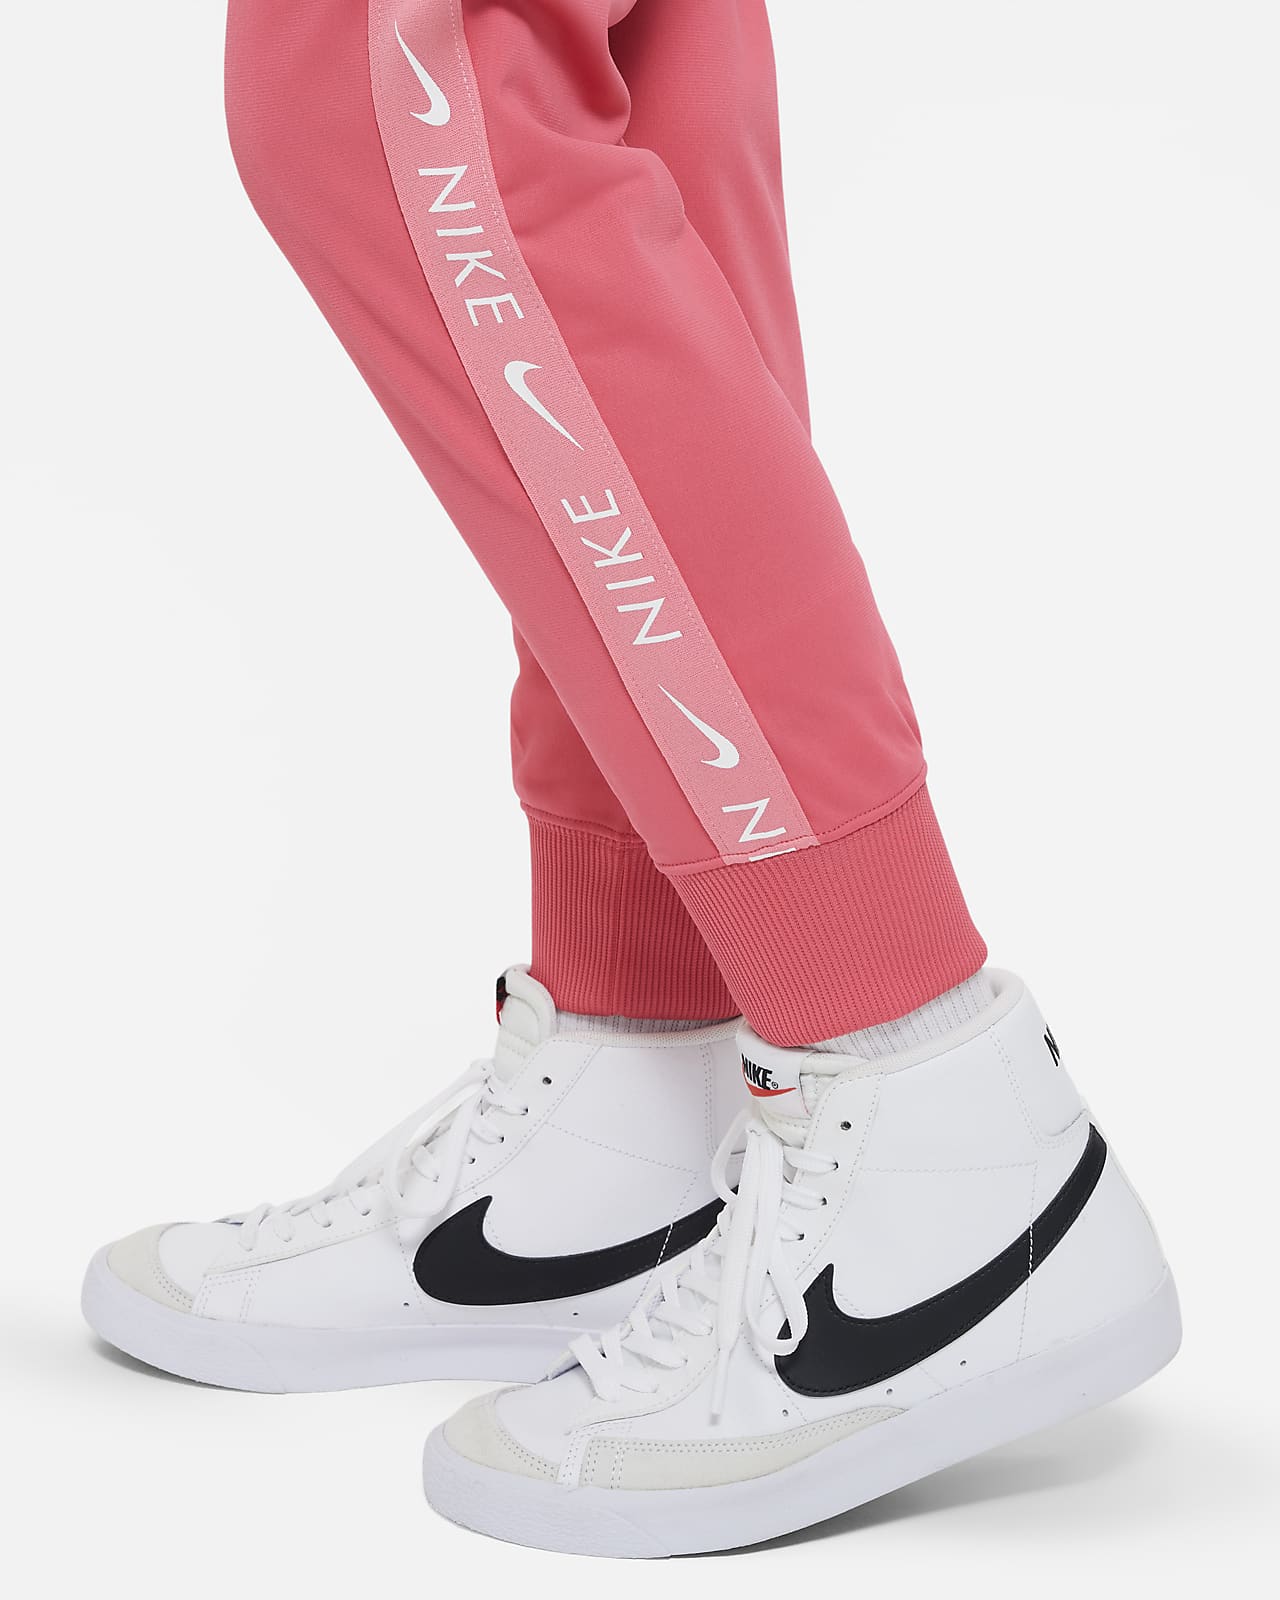 Sportswear Chándal Niño/a. Nike ES